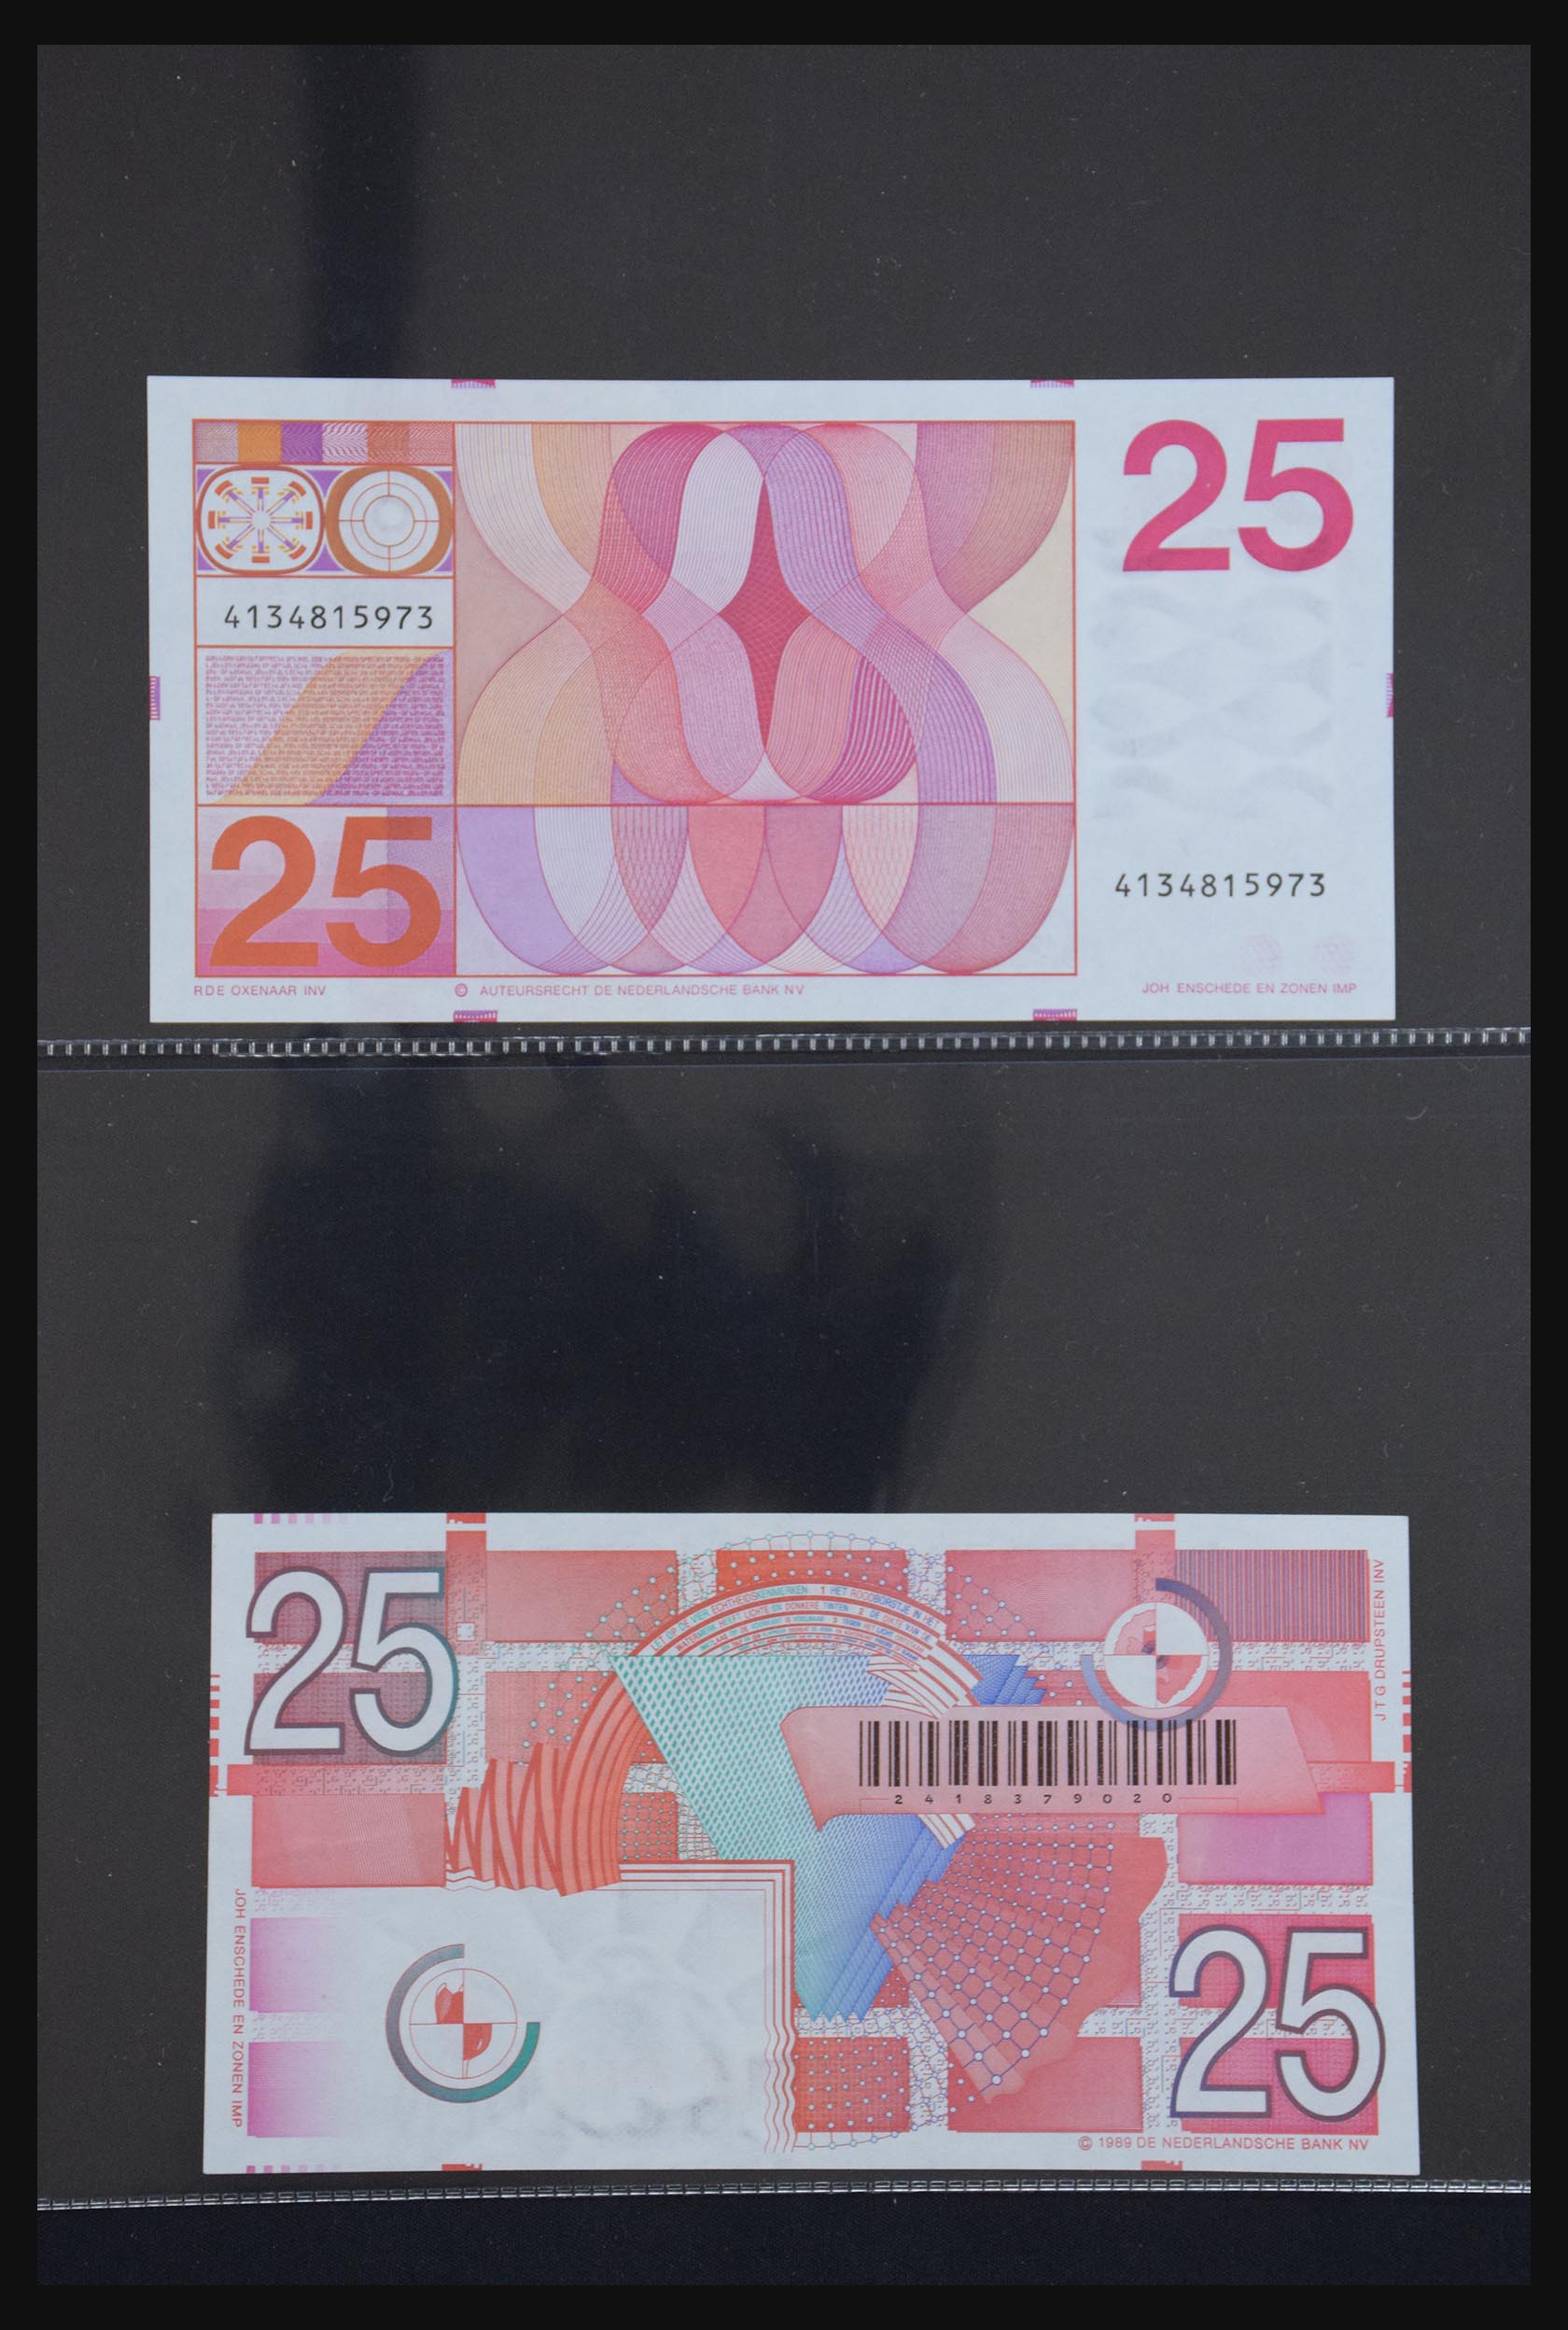 29404 036 - 29404 Netherlands banknotes 1924-1997.